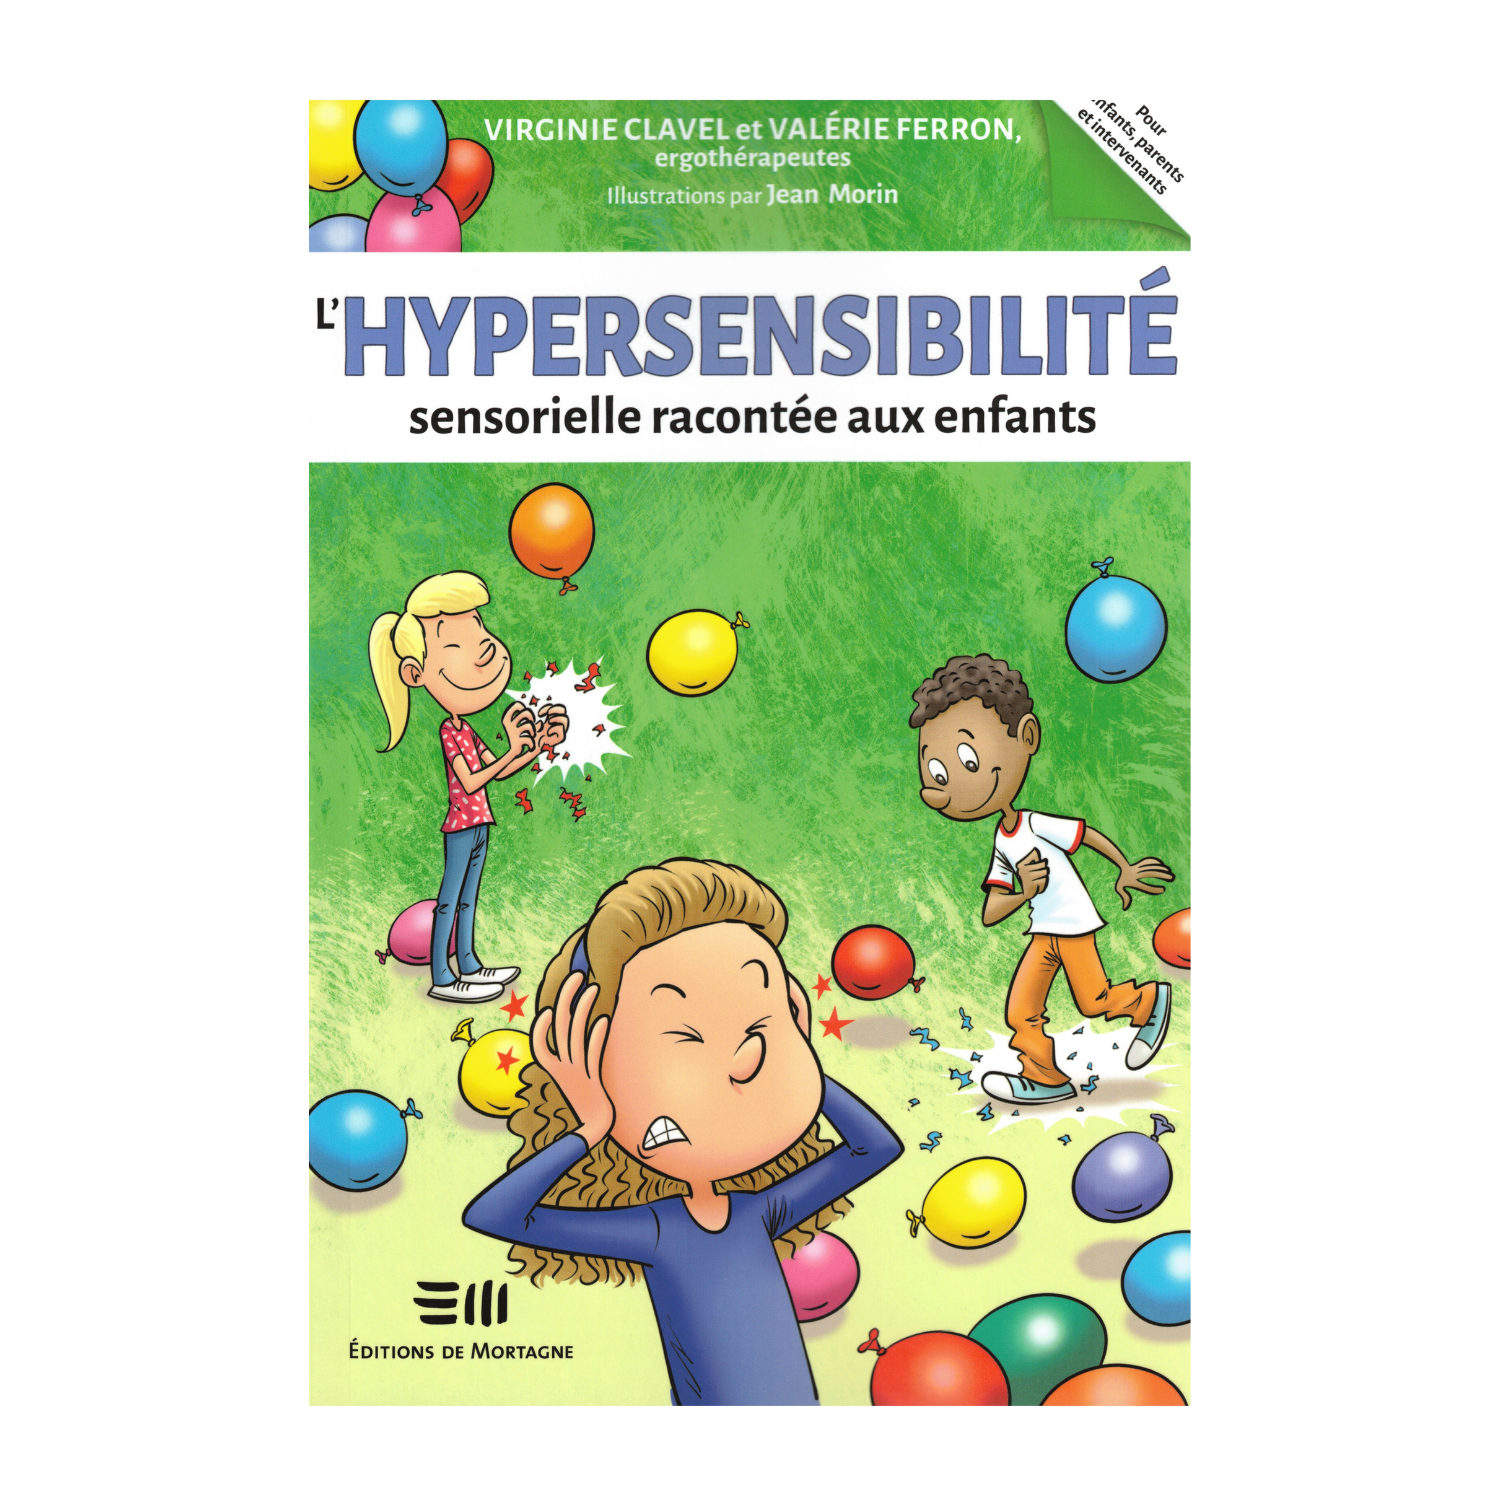 L'hypersensibilité sensorielle racontée aux enfants